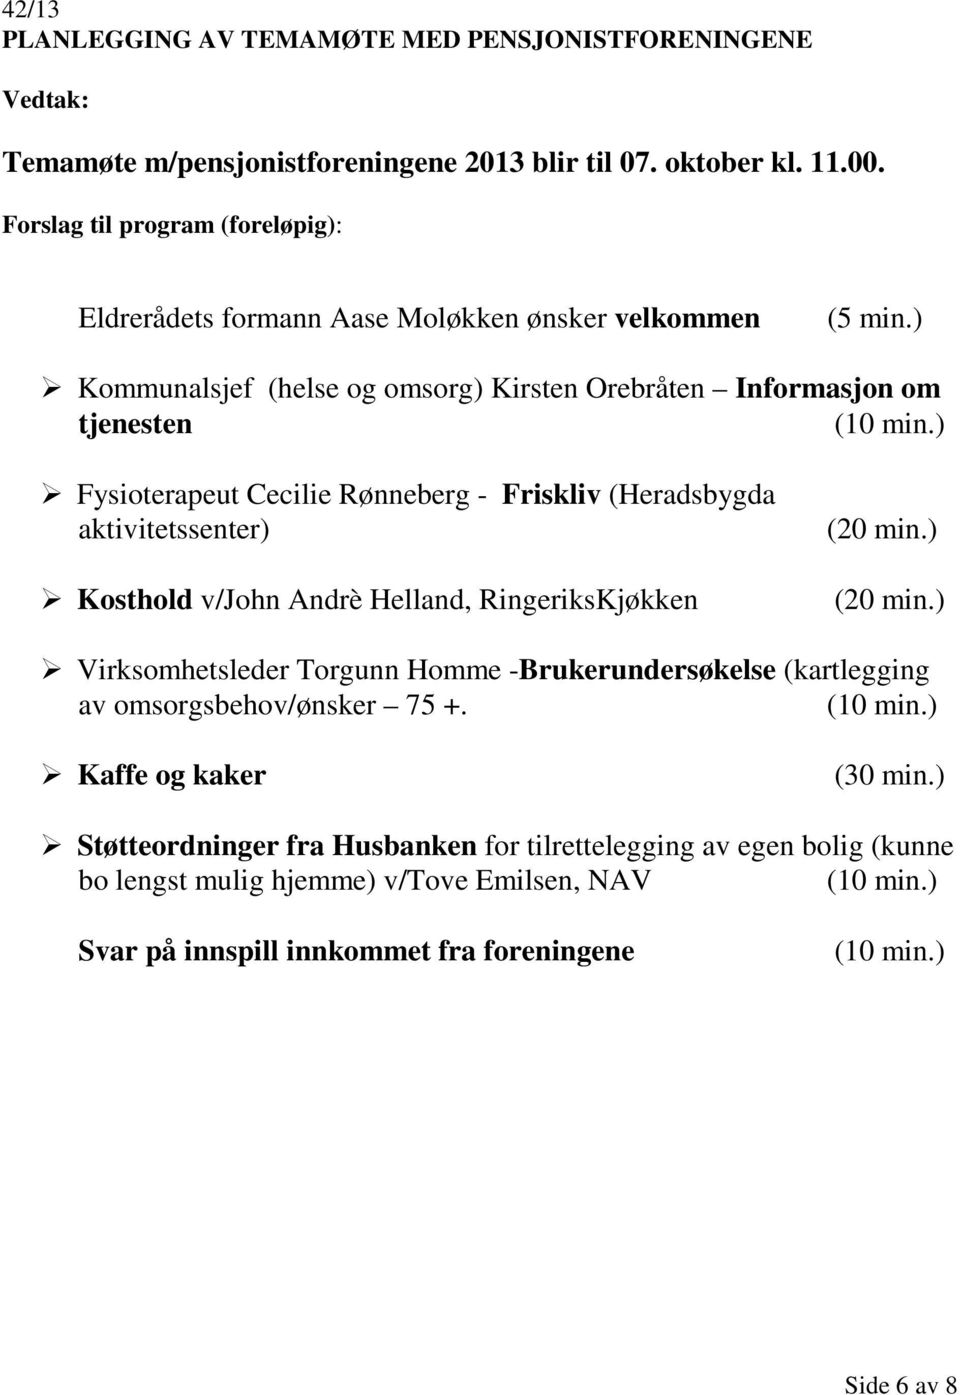 ) Fysioterapeut Cecilie Rønneberg - Friskliv (Heradsbygda aktivitetssenter) Kosthold v/john Andrè Helland, RingeriksKjøkken (20 min.) (20 min.